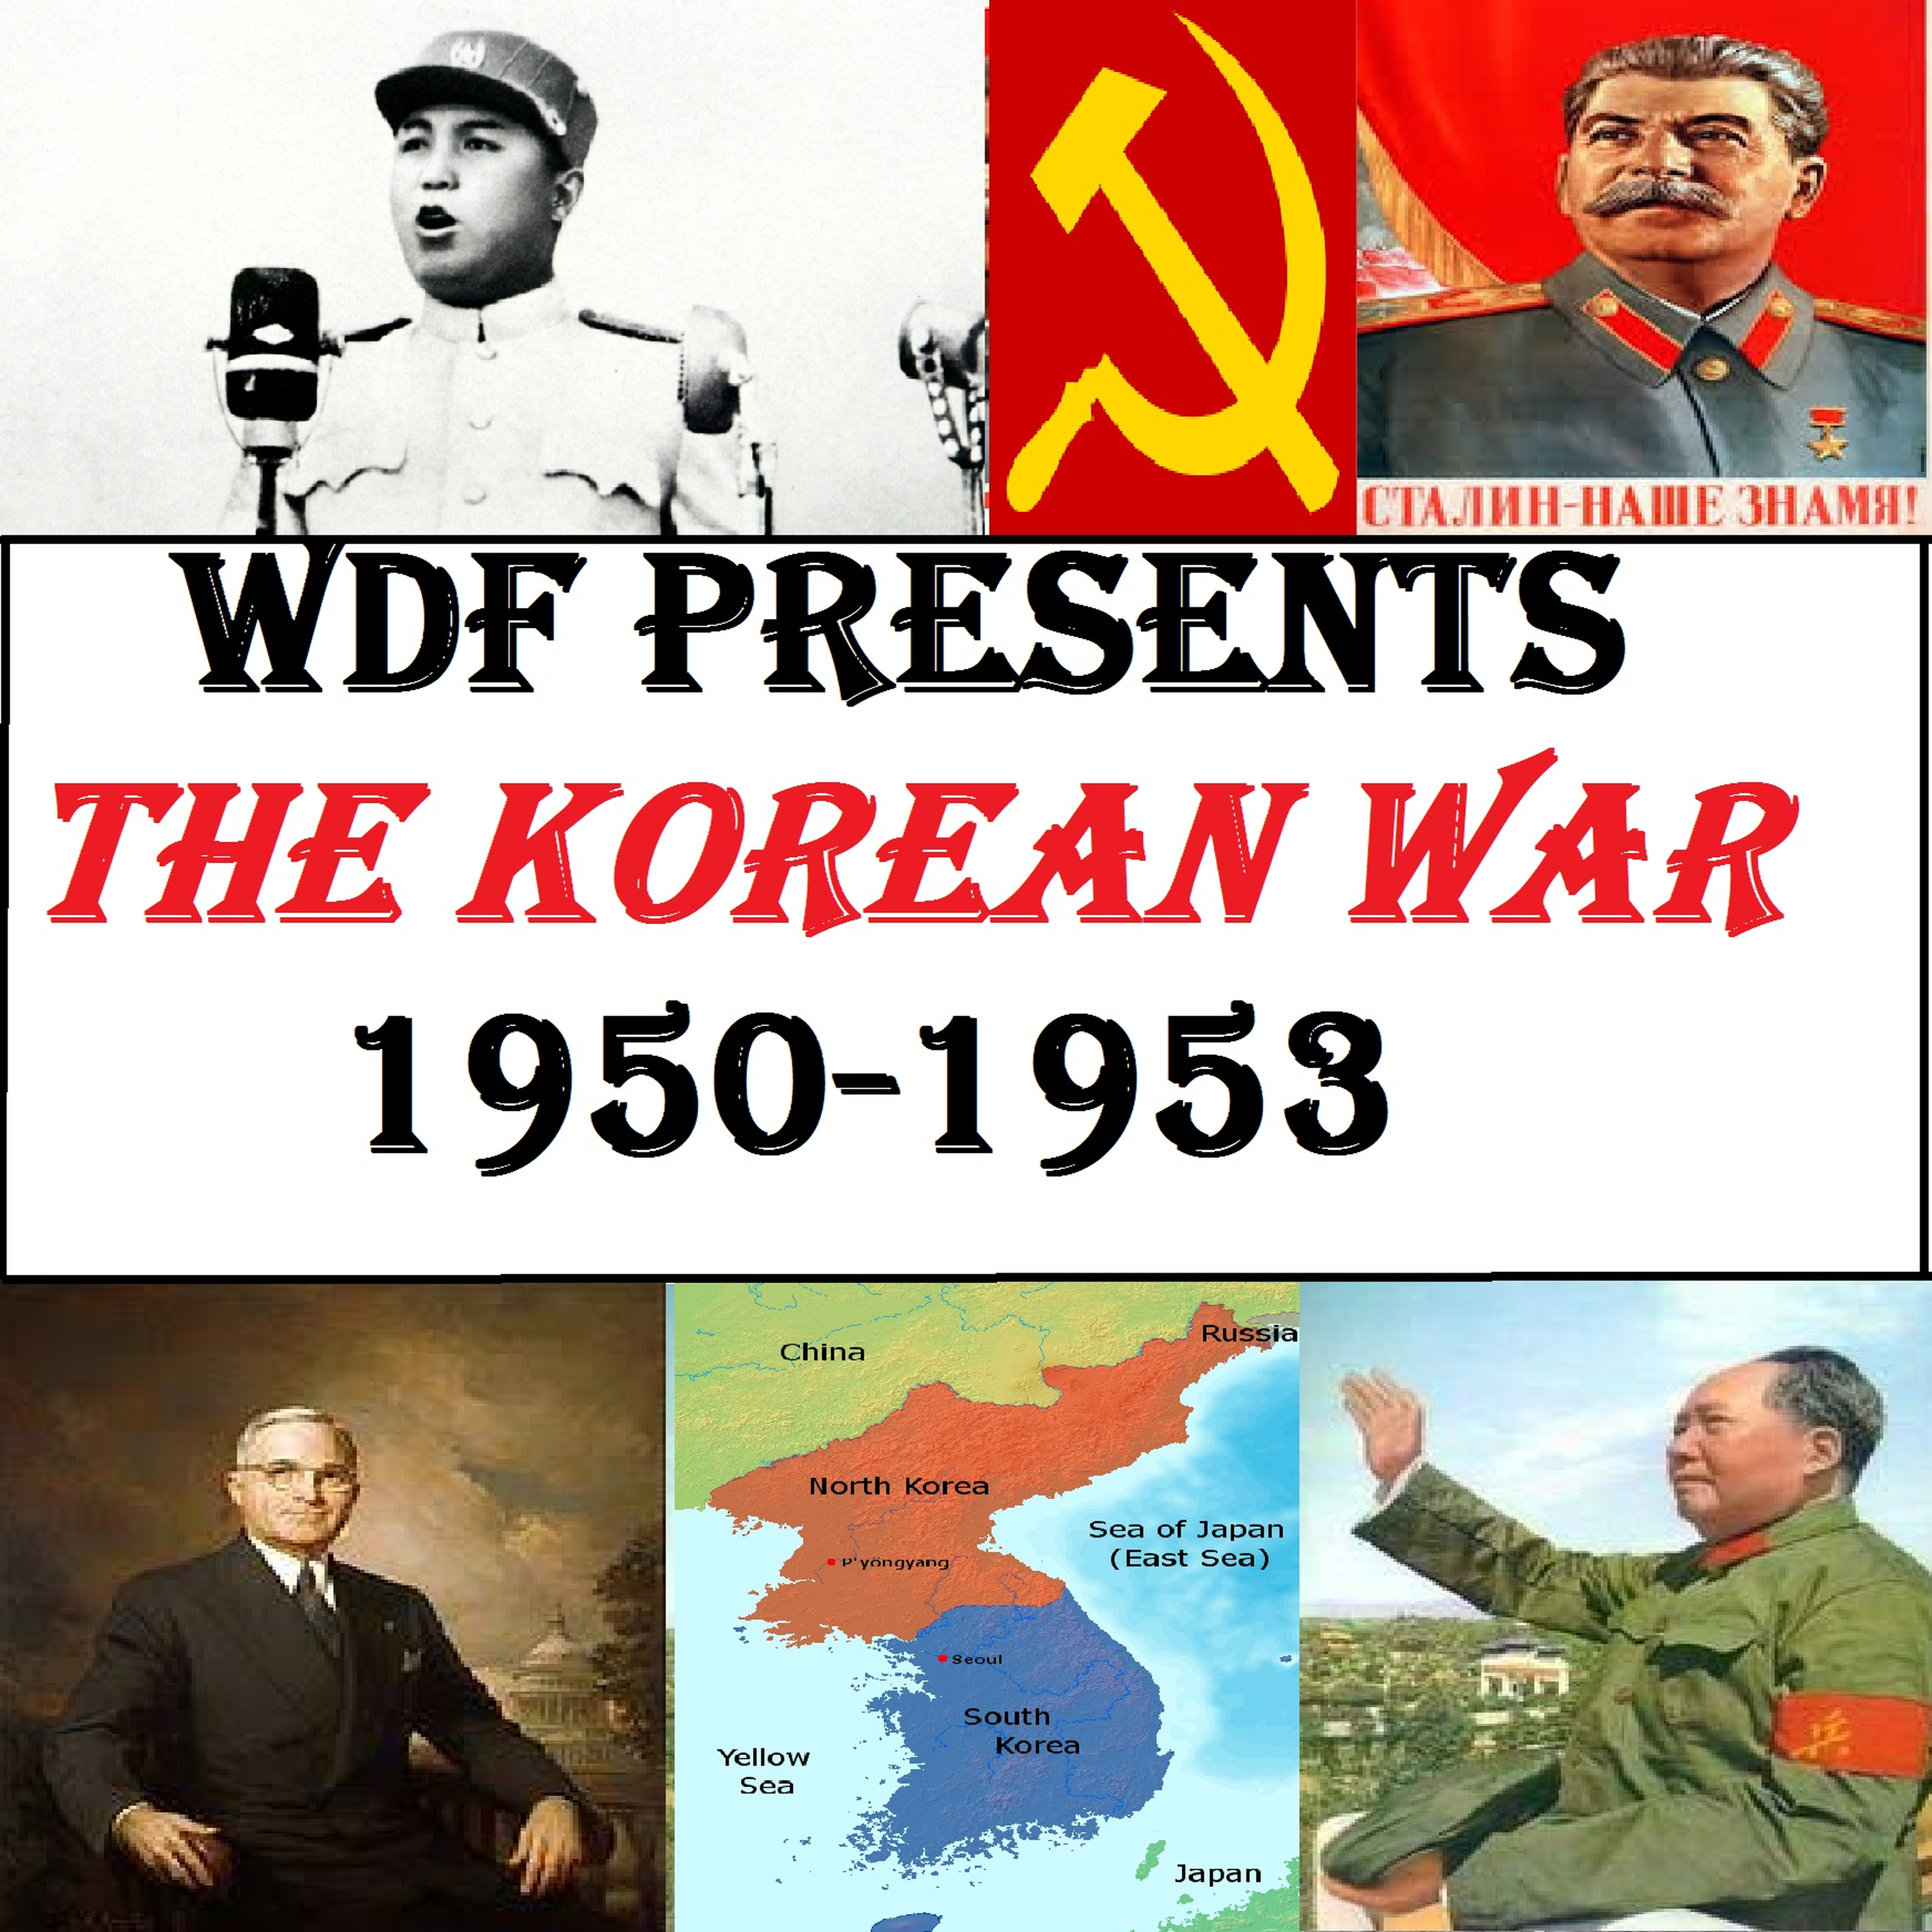 Korean War 36: Ordering Chinese